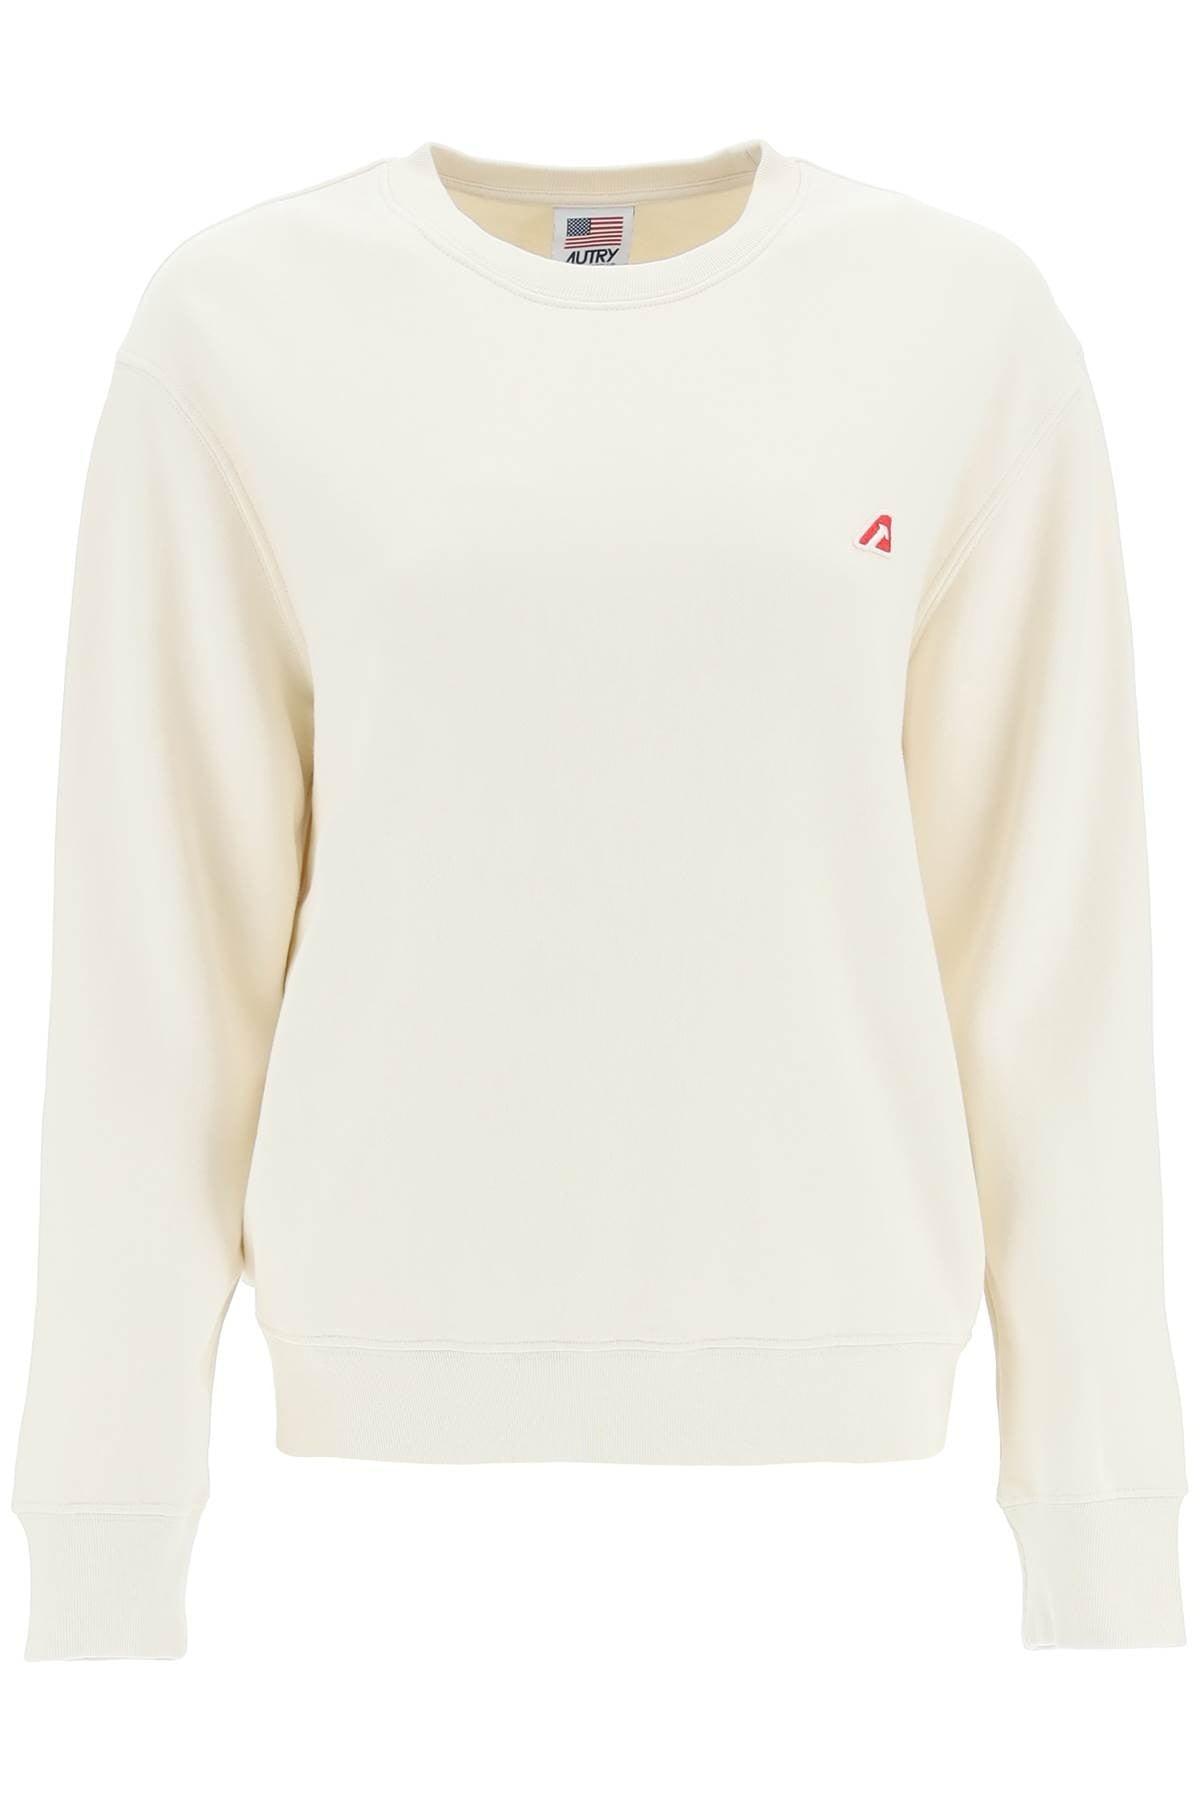 Autry Tennis Academy Sweatshirt in White | Lyst